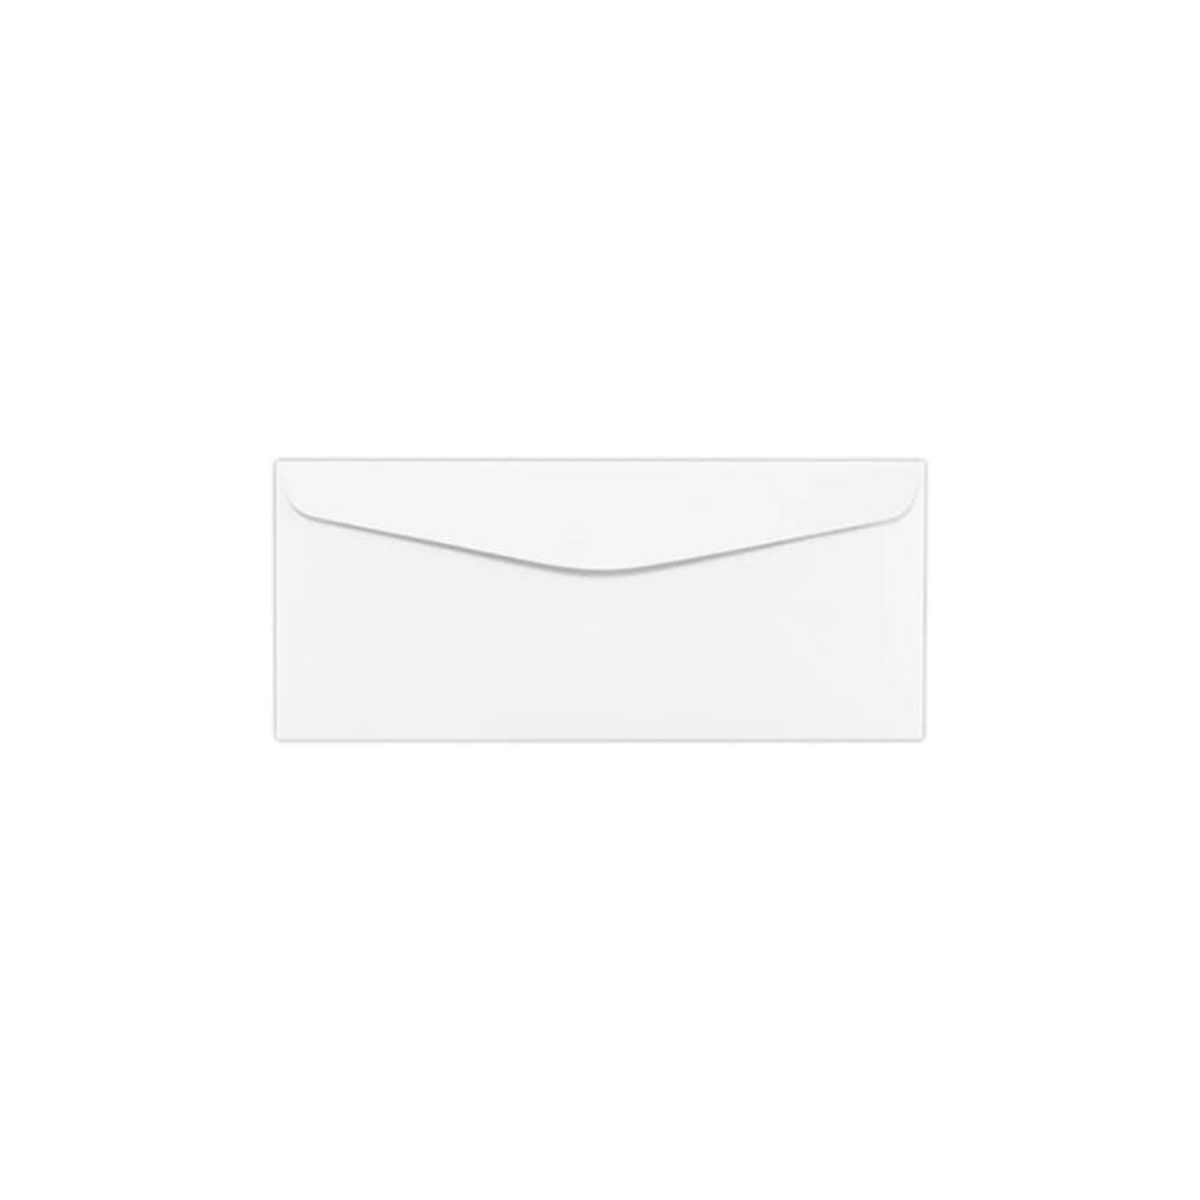 Reskid #9 Envelopes - 2500 Bulk Box - 3 7/8" x 8 7/8" Small Return Envelopes - Blank Windowless White Envelopes